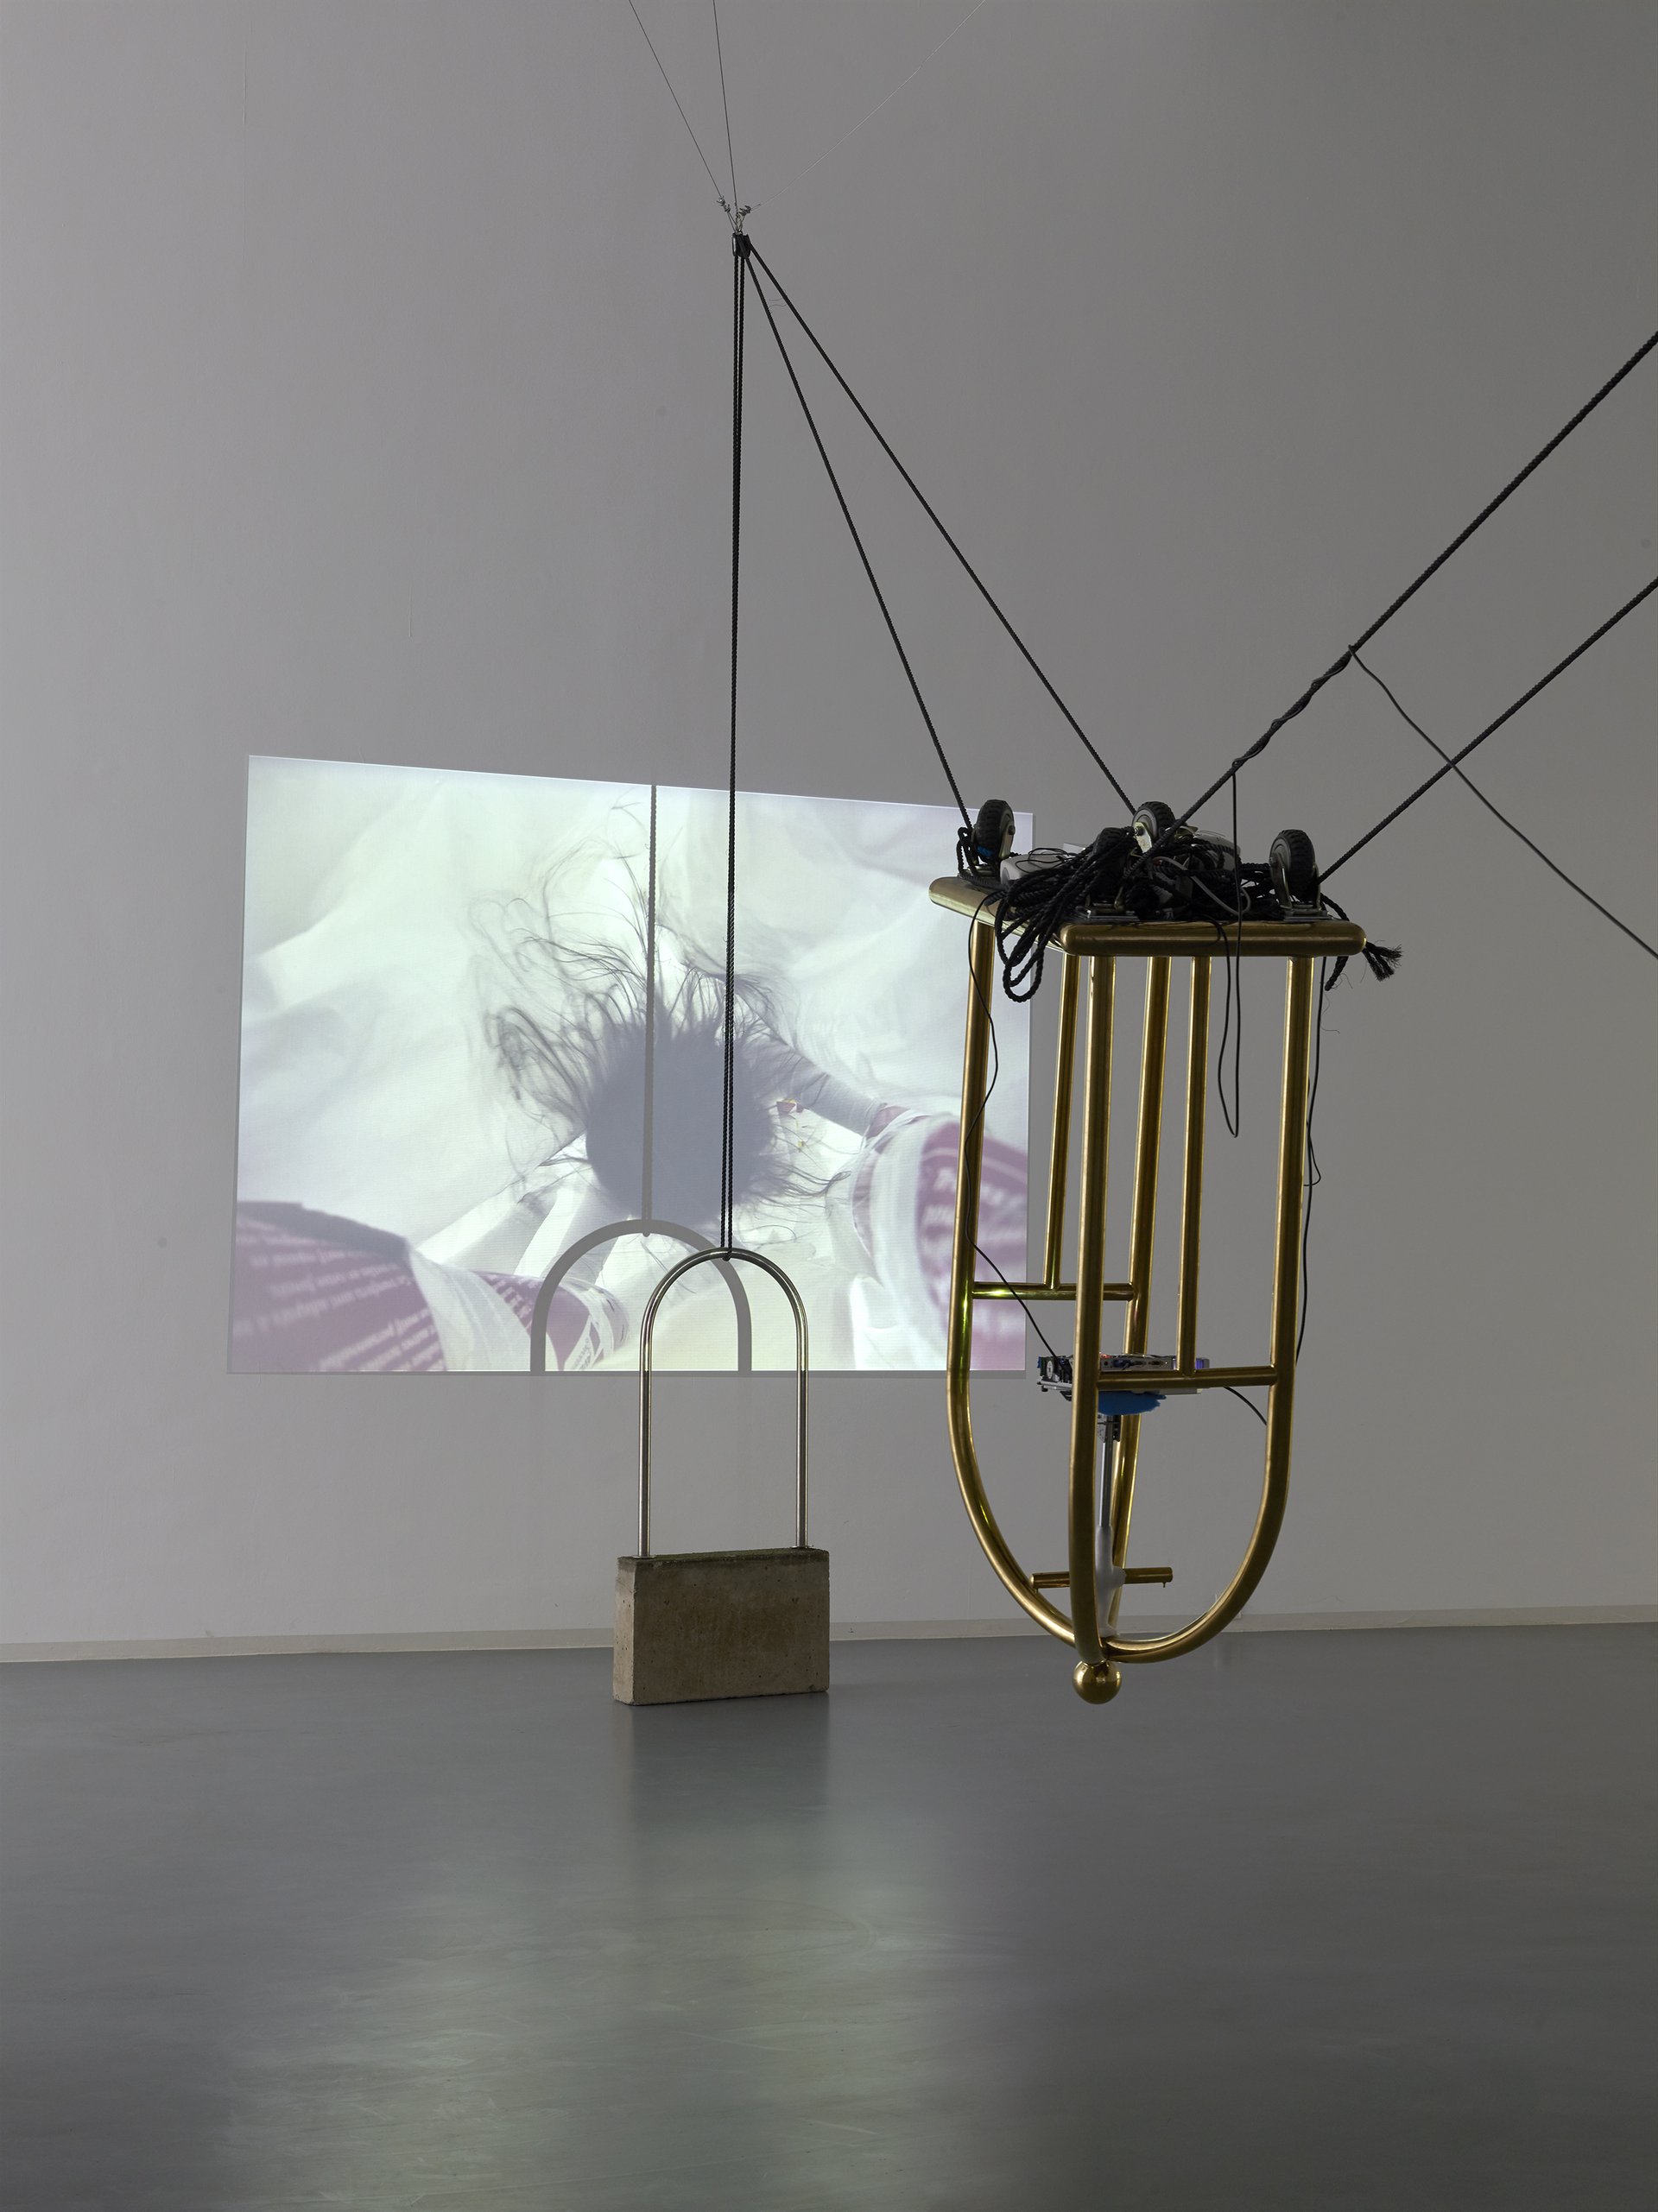 Raphaela Vogel, Ohne Titel, 2015, Installationsansicht, 2015, Bonner Kunstverein, Courtesy die Künstlerin und BQ, Berlin. Photo: Simon Vogel